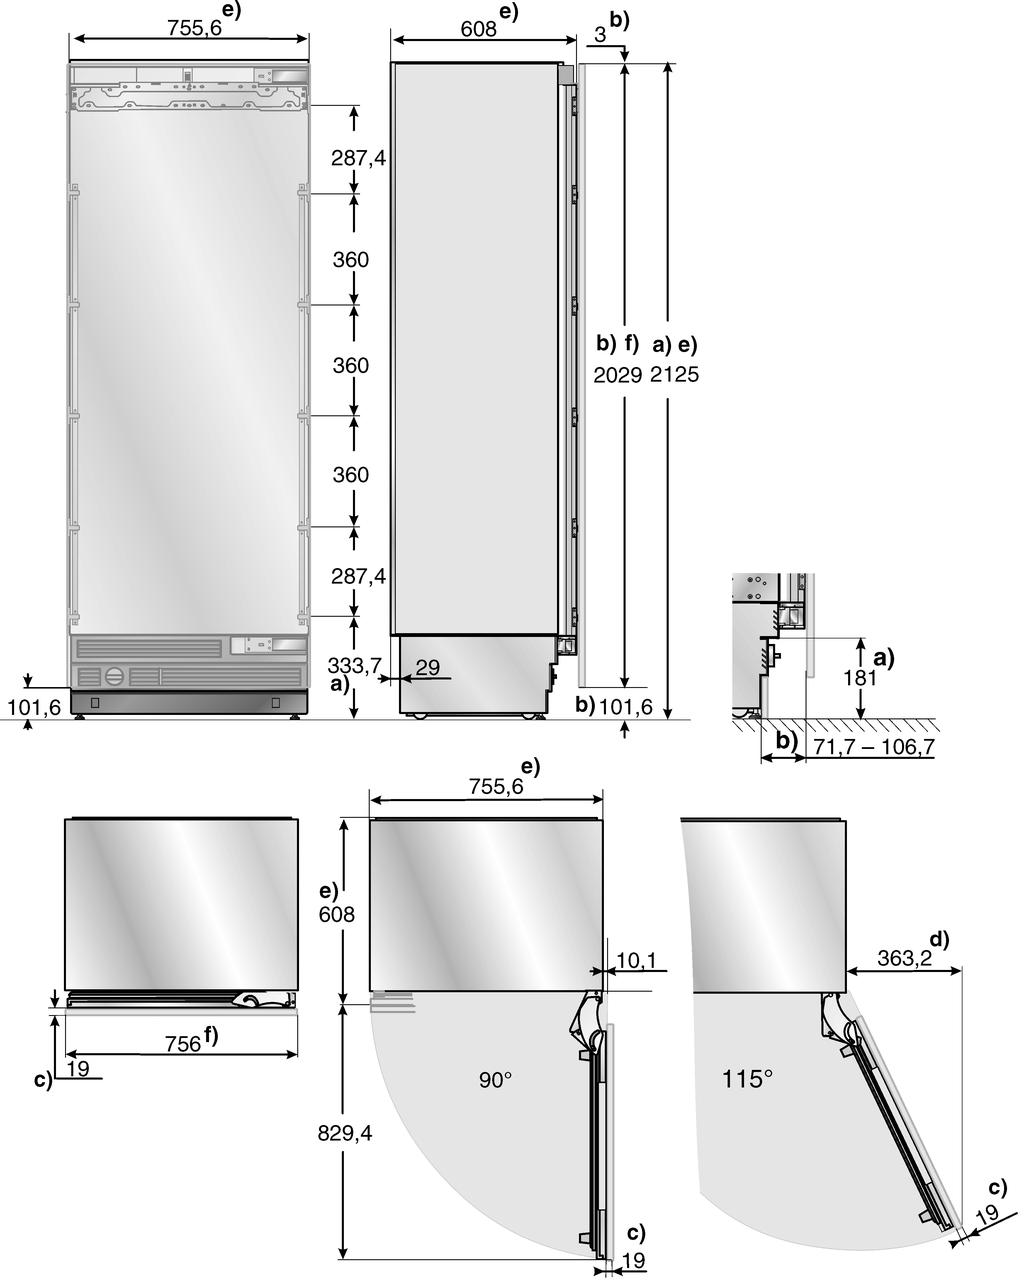 75,6 cm cihazlar buzdolaplarý ve derin dondurucular Açýklama: Boydan boya beyaz eþya cephesine sahip bir örnek tasvir edilmiþtir.